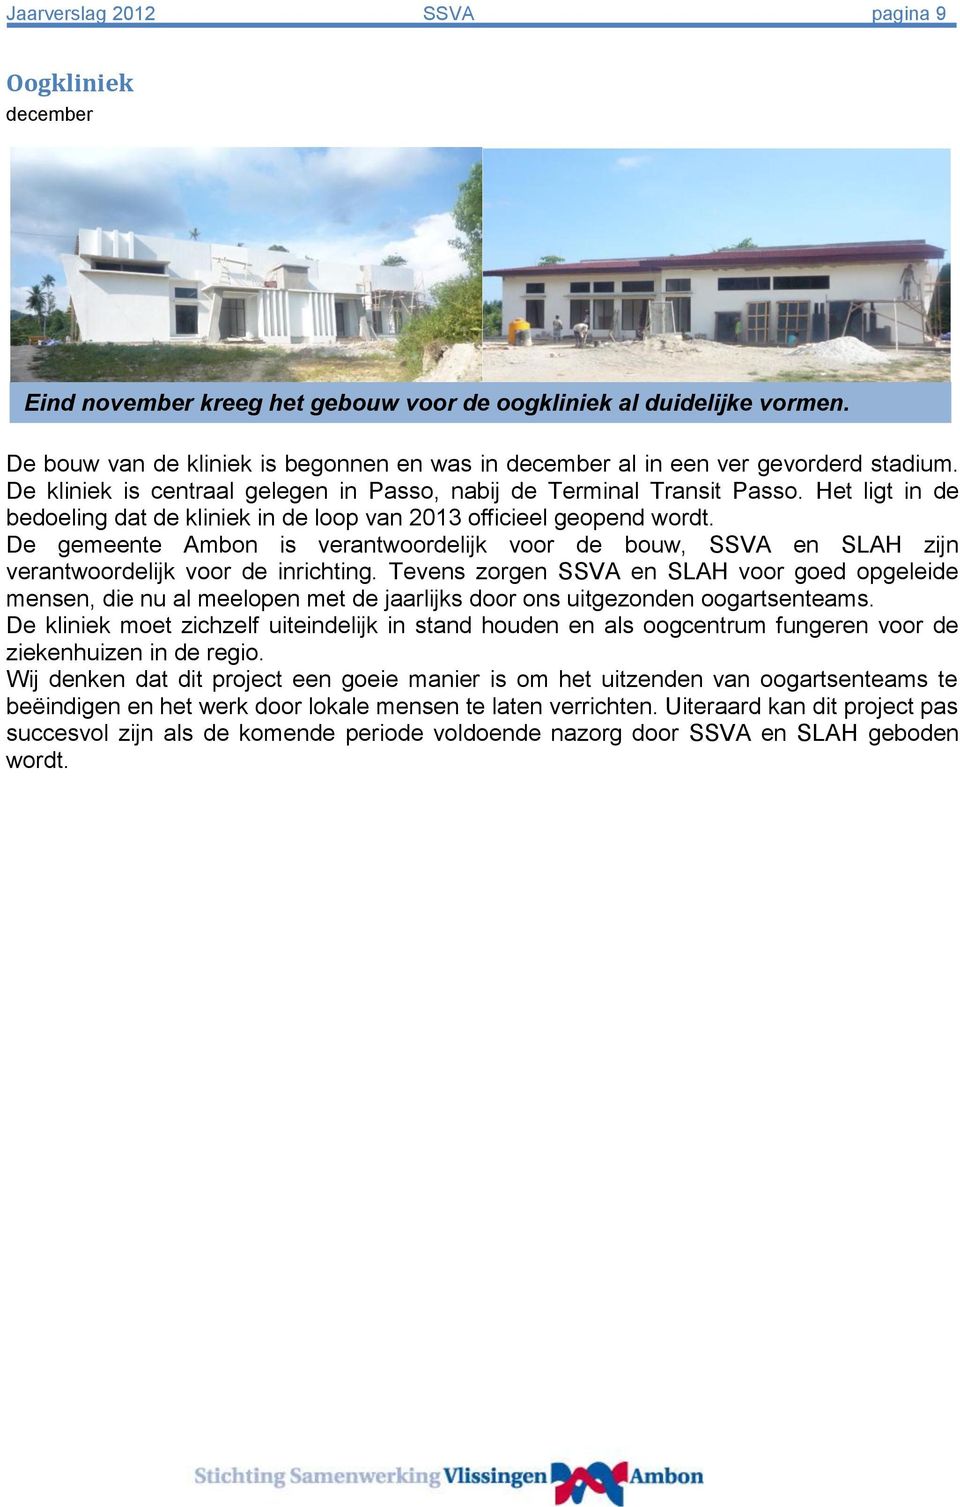 Het ligt in de bedoeling dat de kliniek in de loop van 2013 officieel geopend wordt. De gemeente Ambon is verantwoordelijk voor de bouw, SSVA en SLAH zijn verantwoordelijk voor de inrichting.